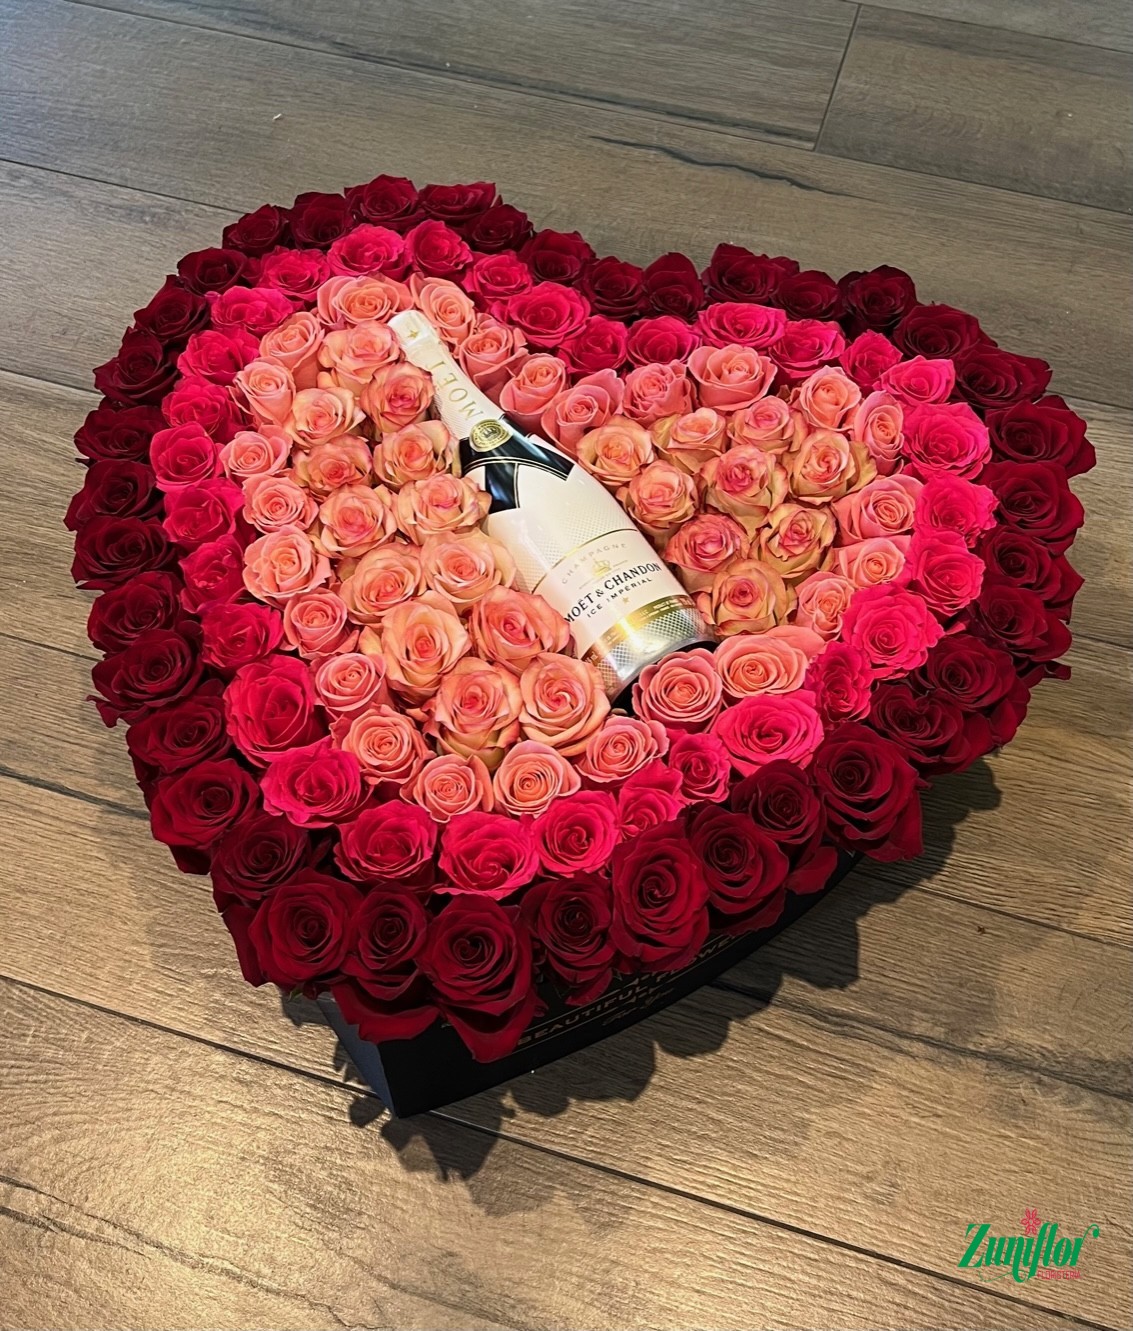 Amor Mio, Nuestra Caja de Corazón incluye 120 rosas importadas y una botella de Moët.